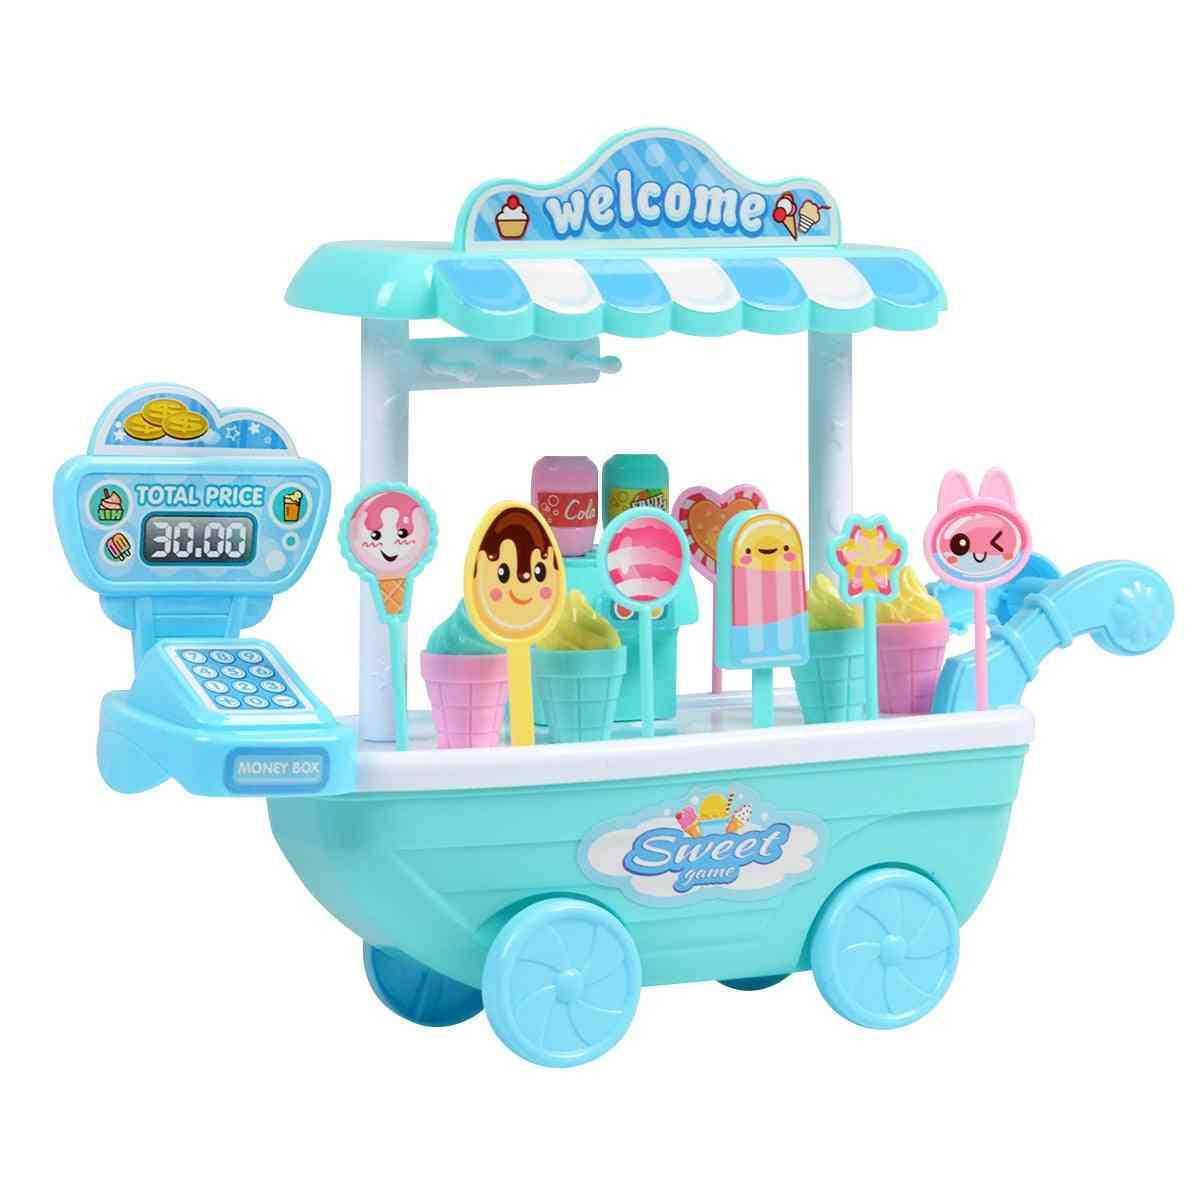 Odgrywanie ról dla dzieci, zabawka edukacyjna - mini wózek ze słodyczami odpinany sklep z lodami zabawka kasa fiskalna prezent bożonarodzeniowy - jasnoniebieski